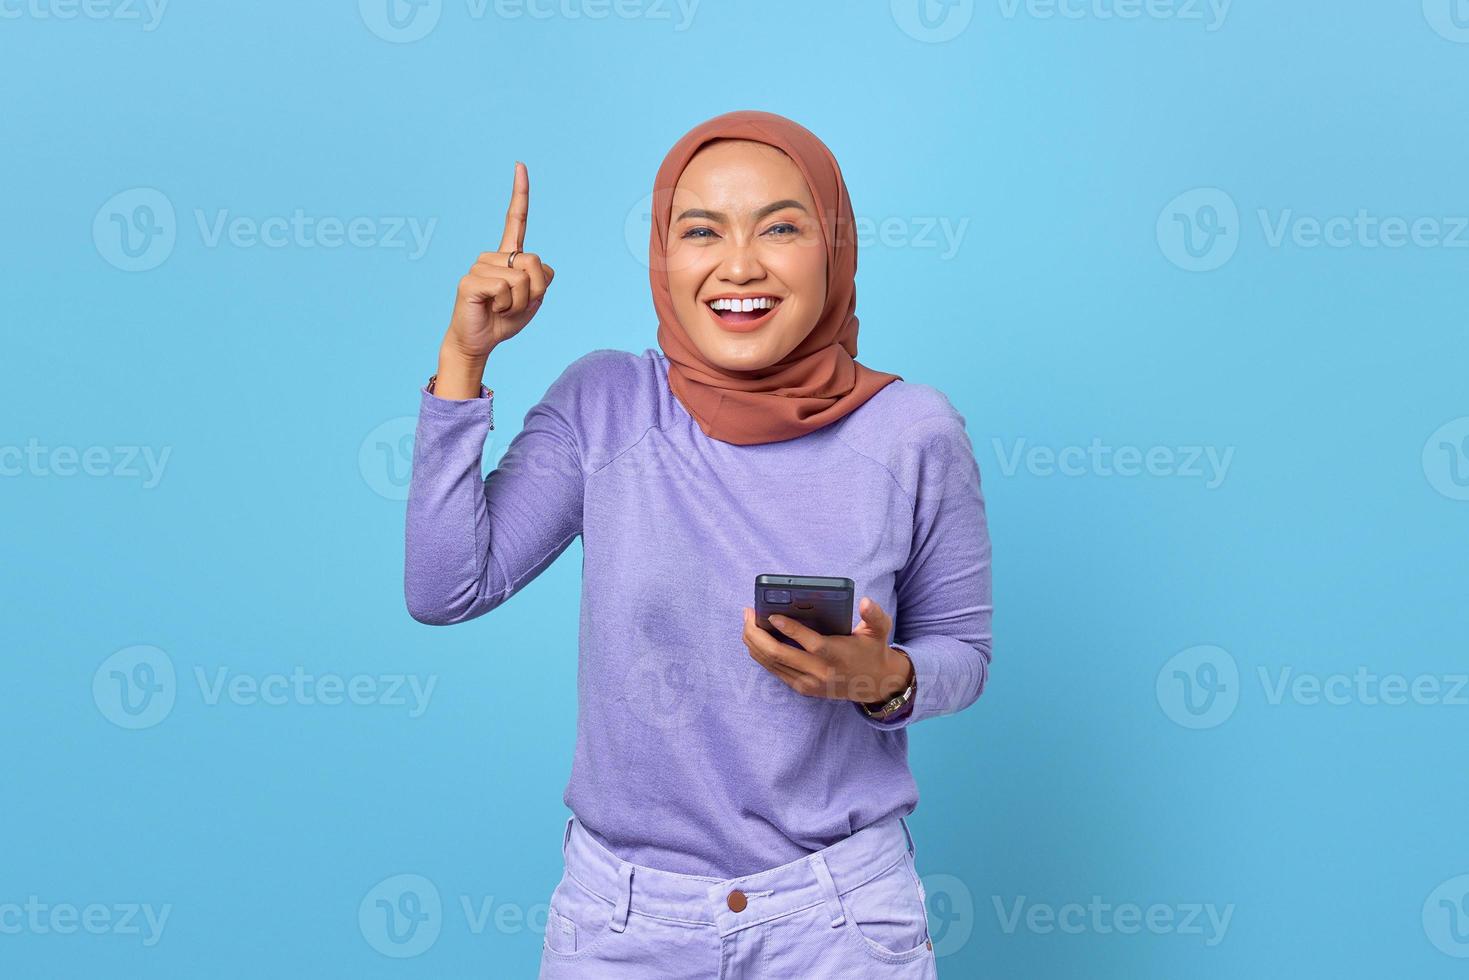 Porträt einer lächelnden jungen asiatischen Frau, die Handy hält, während der Finger auf blauem Hintergrund erhoben wird foto